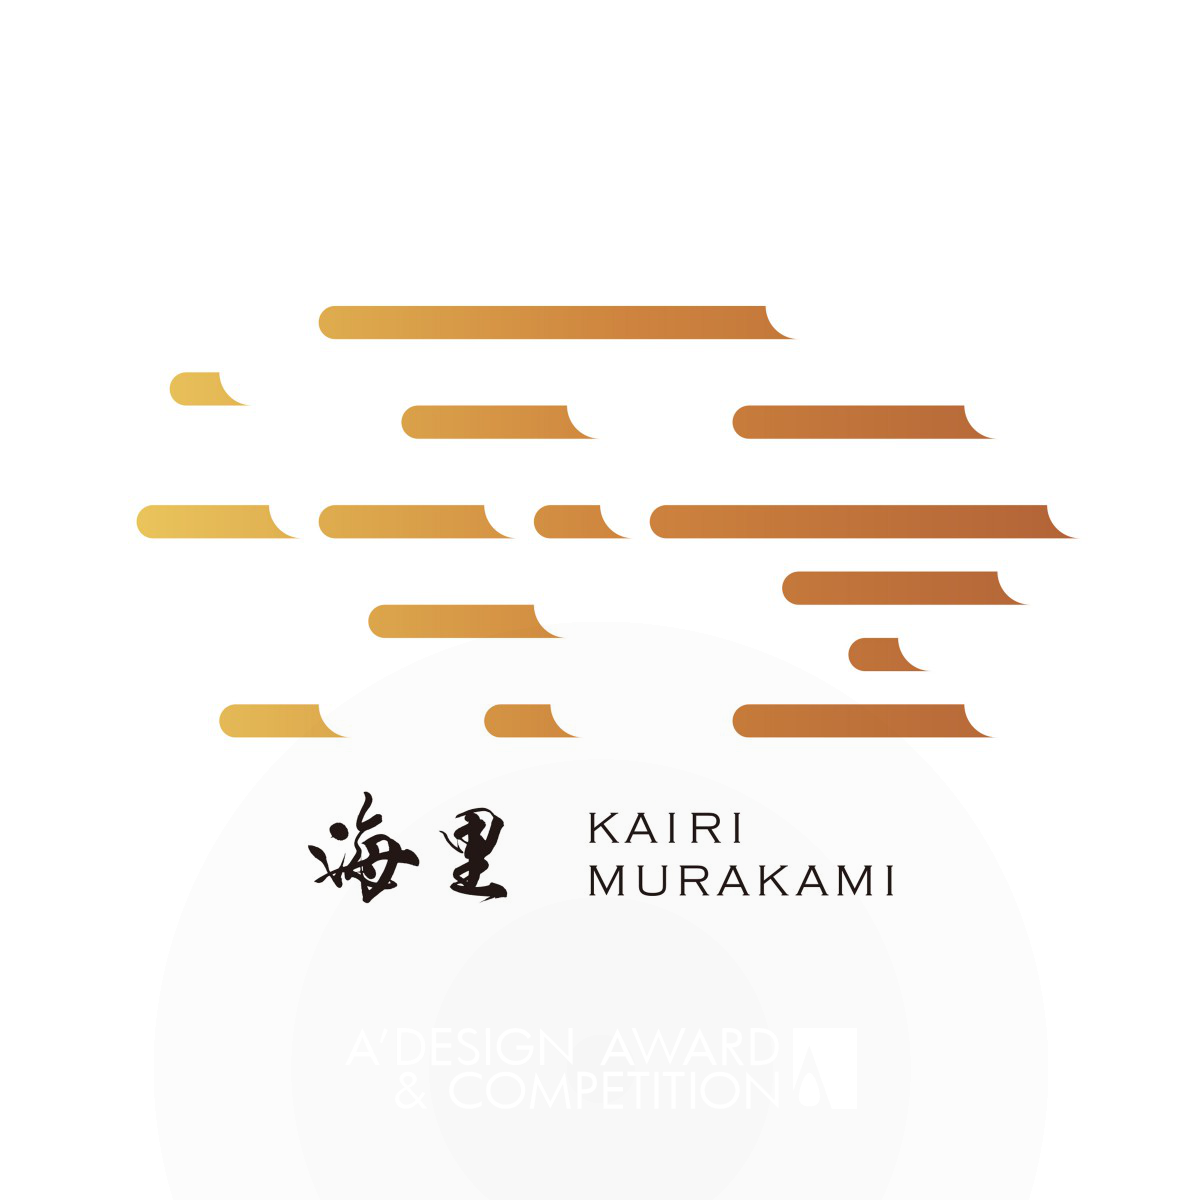 Iki Retreat Kairi Murakami Brand Identity Redesign by Daisuke Kobayashi